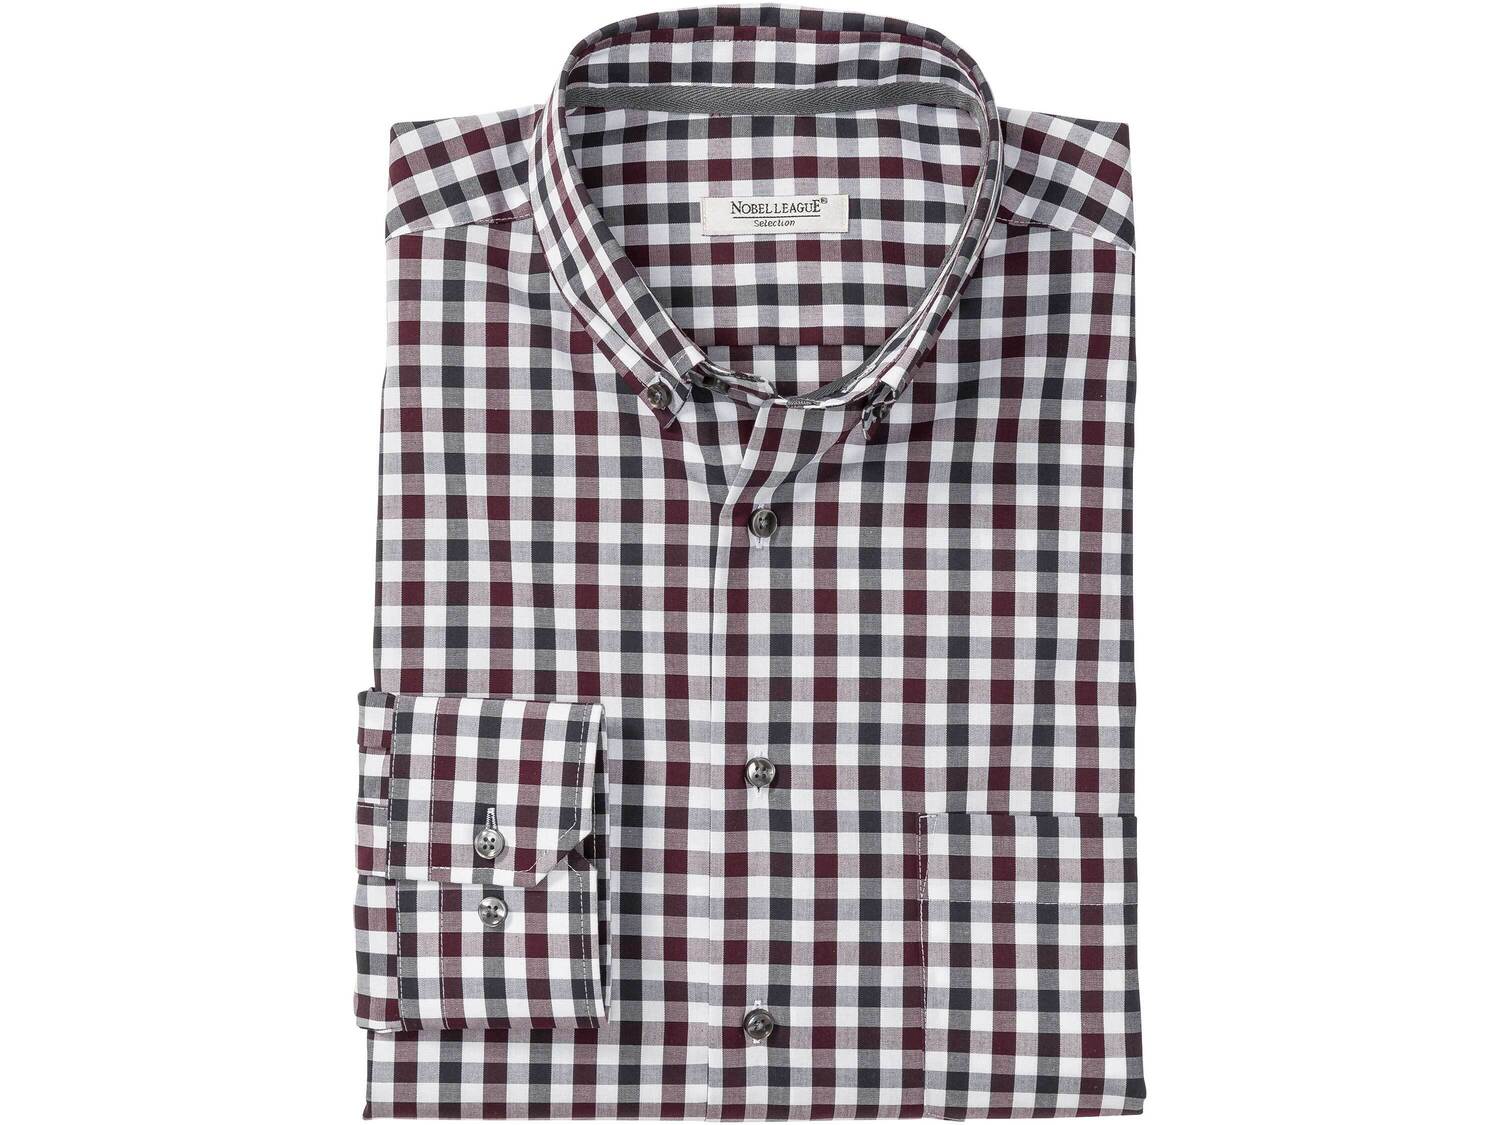 Koszula biznesowa , cena 49,99 PLN 
- rozmiary: 40-44
- 100% bawełny
- wkładki ...